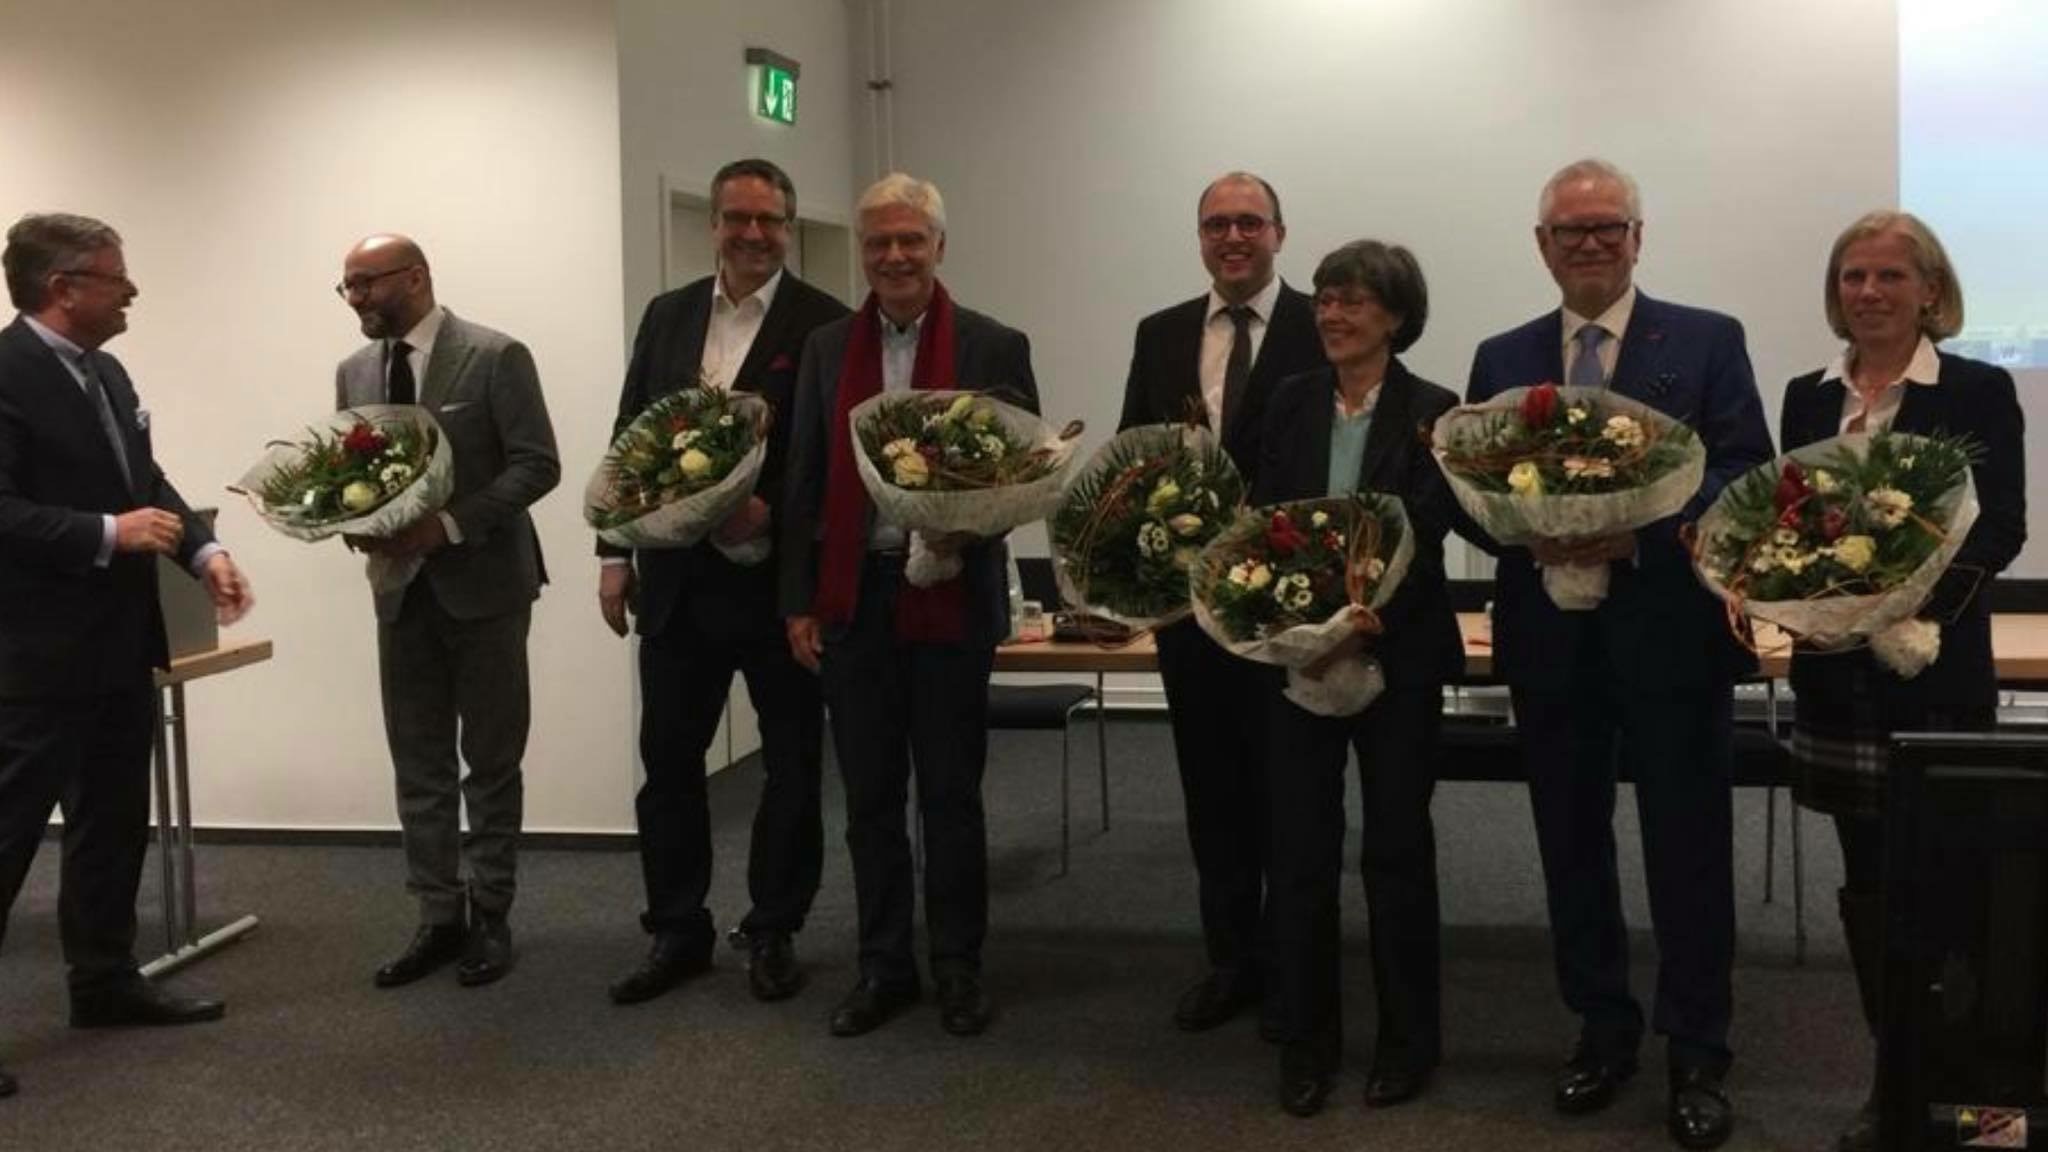 Amtswechsel - Der neue Vorstand der Ärztekammer Hamburg wird mit Blumen begrüßt.